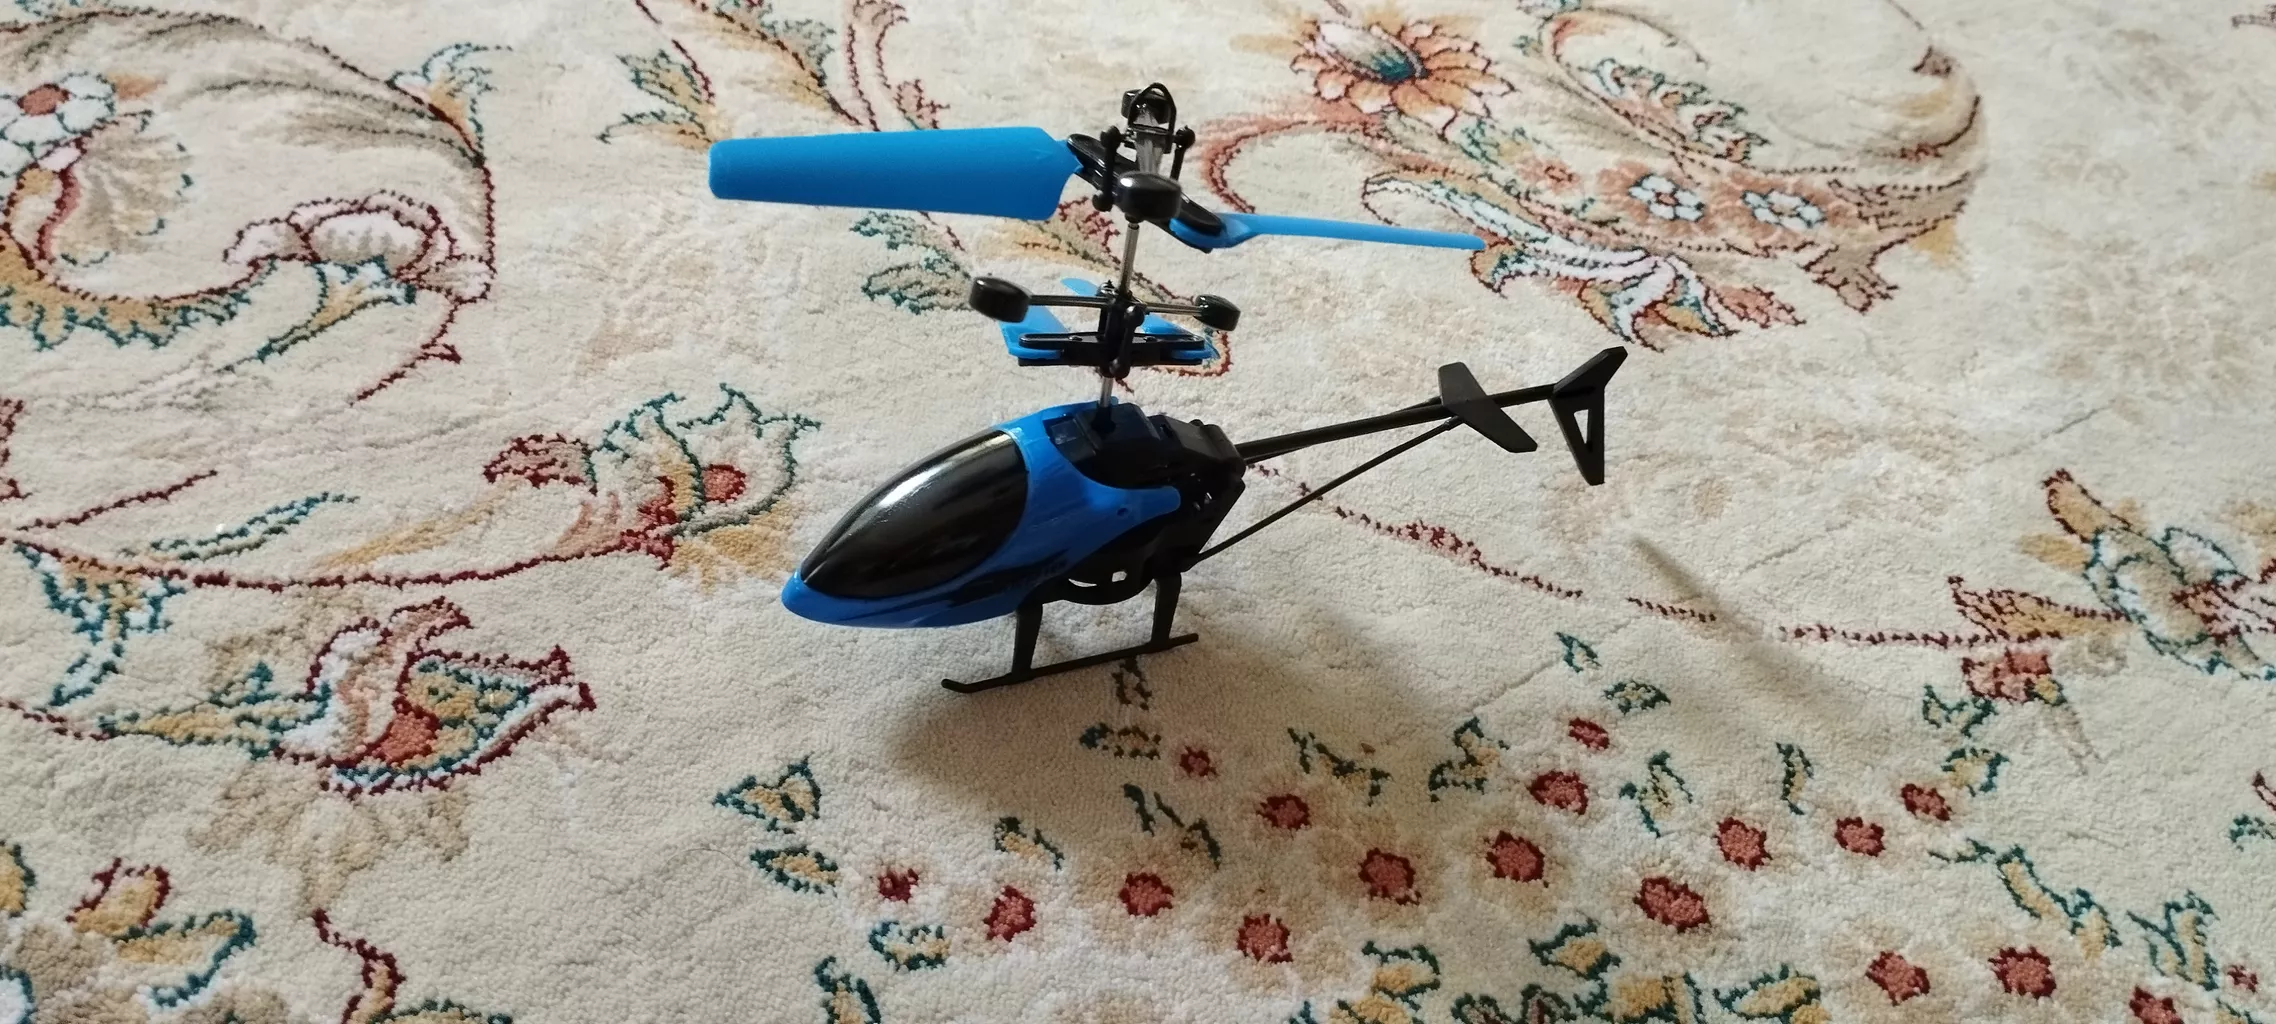 هلیکوپتر بازی کد MK19